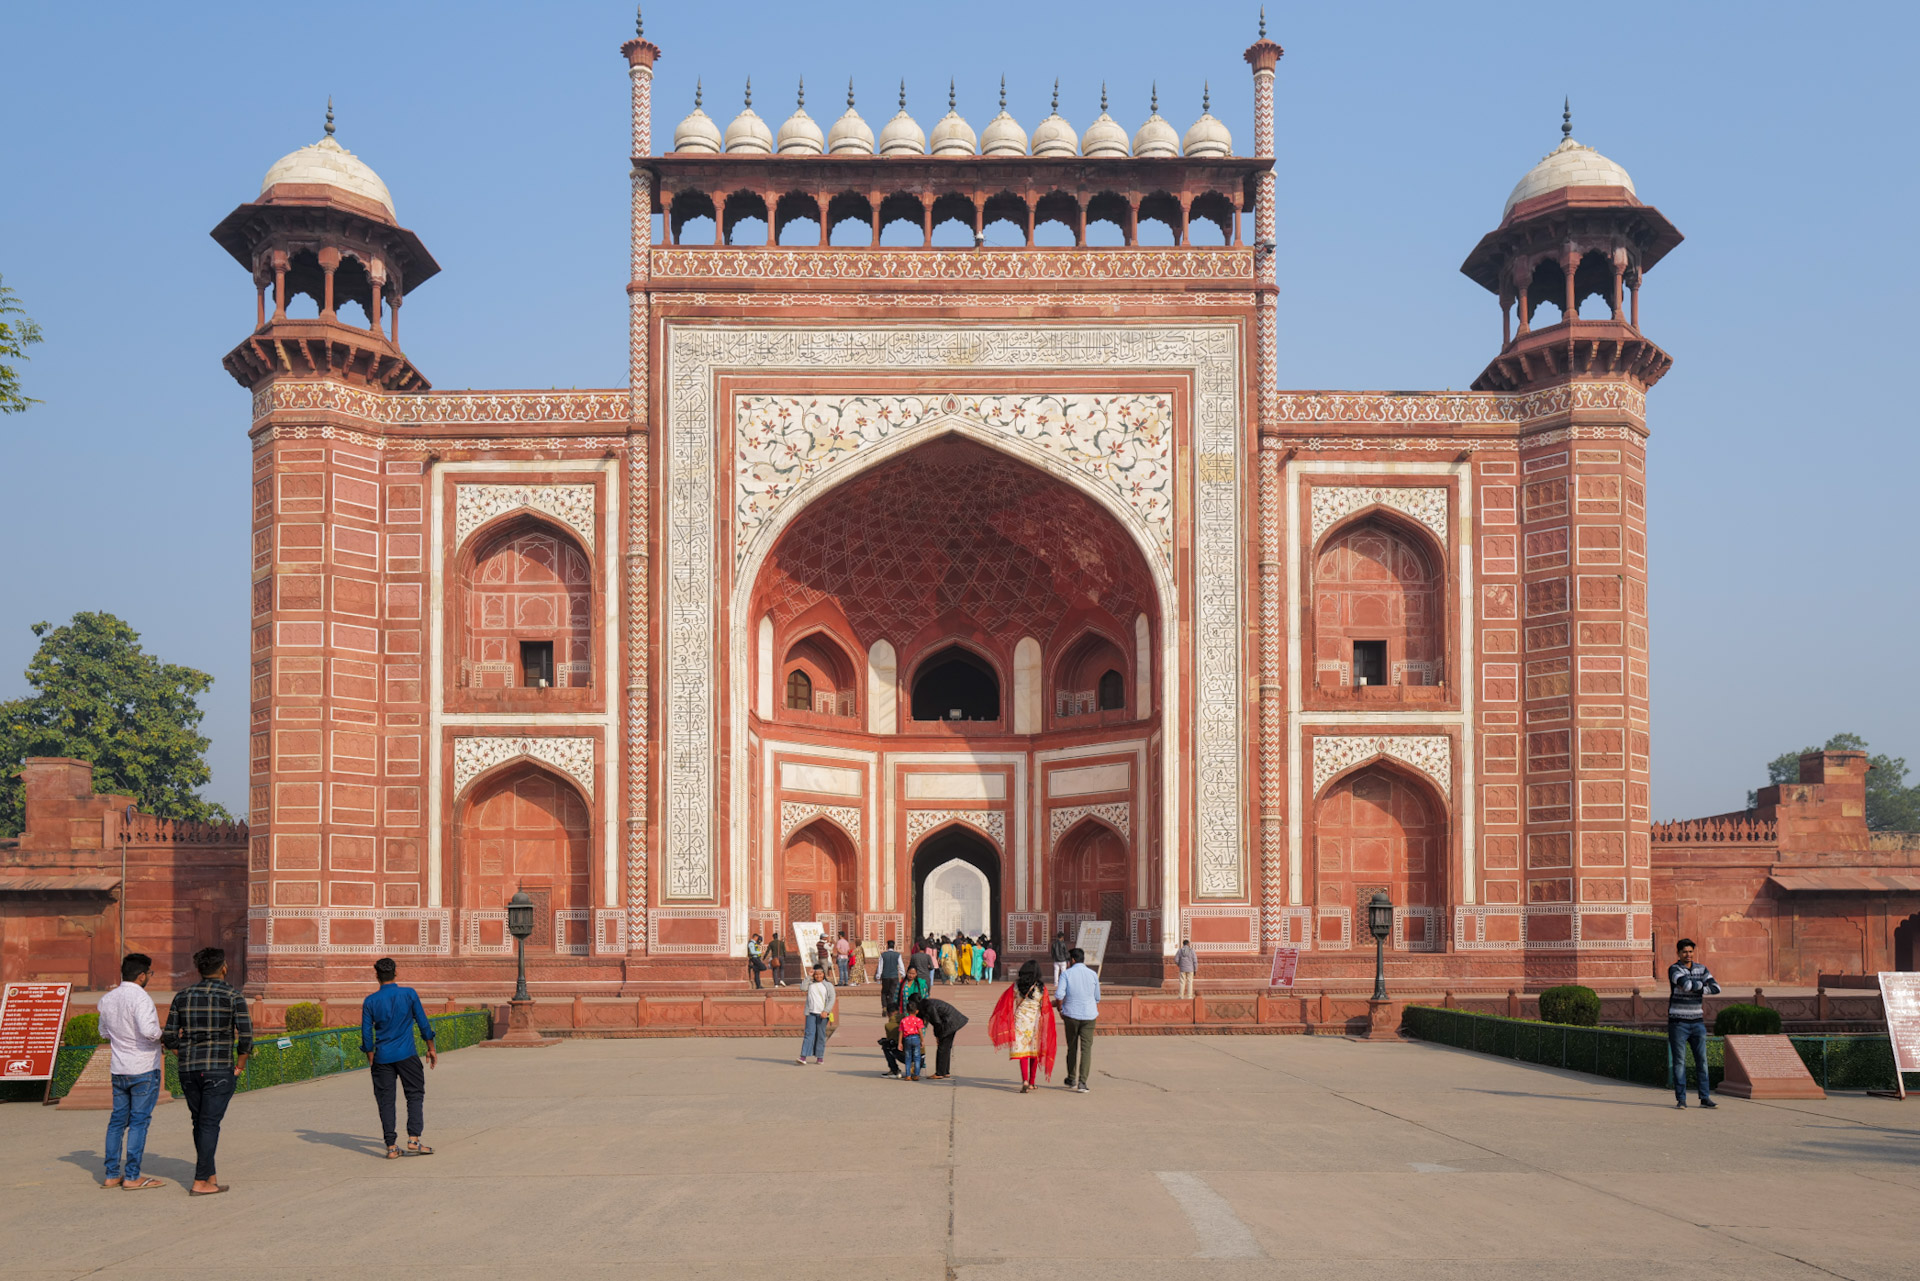 Eingangstor zum Taj Mahal